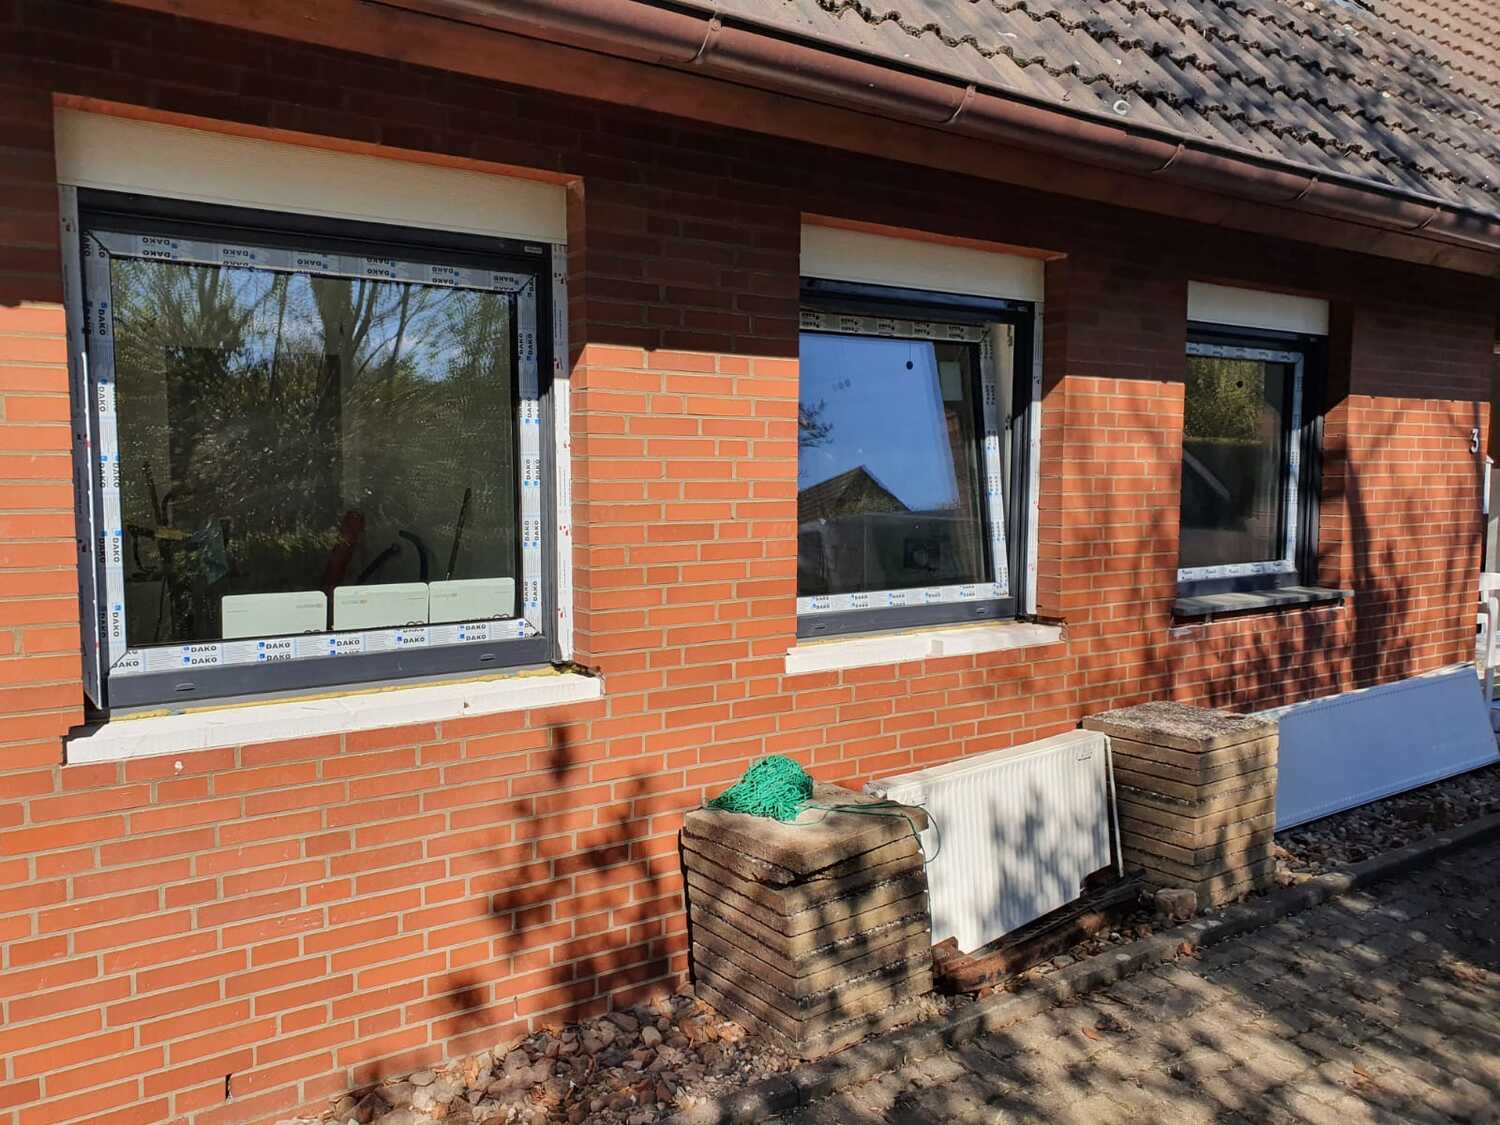 BauAdler - Ihr Profi für Fenster & Fenstermontage aus Lügde